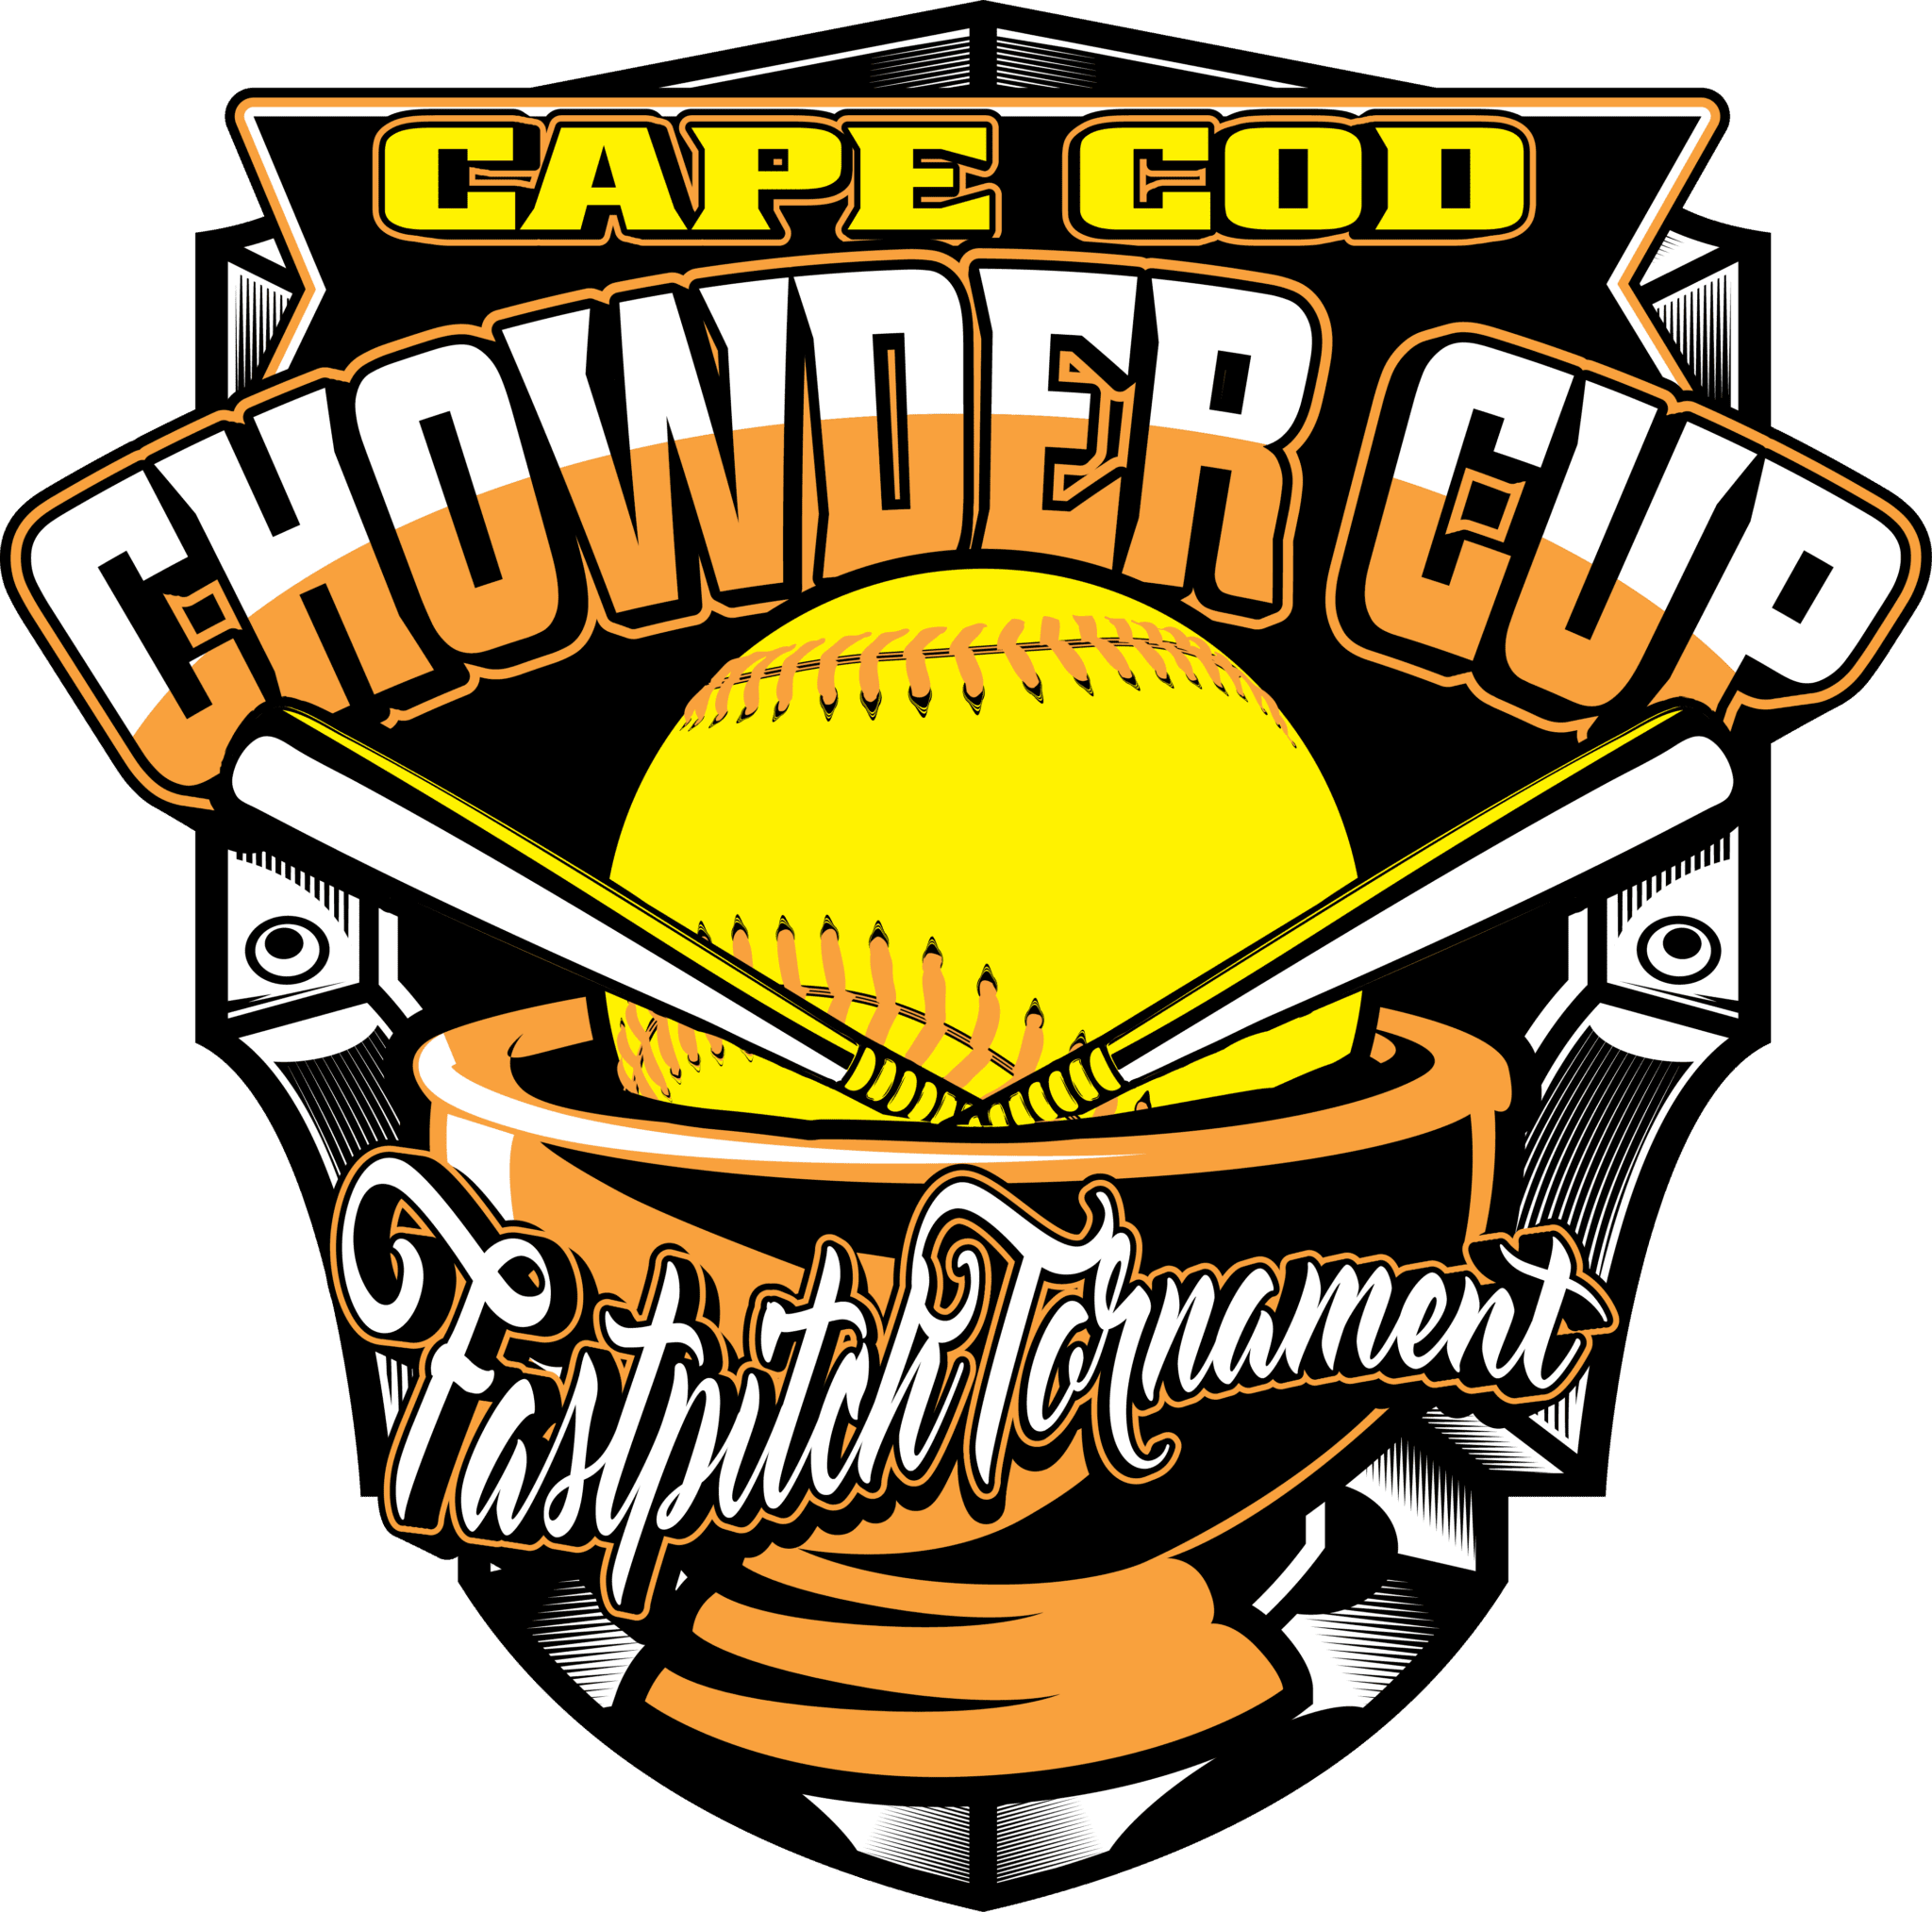 CAPE COD CHOWDER CUP FASTPITCH TOURNAMENT UrArtStudio